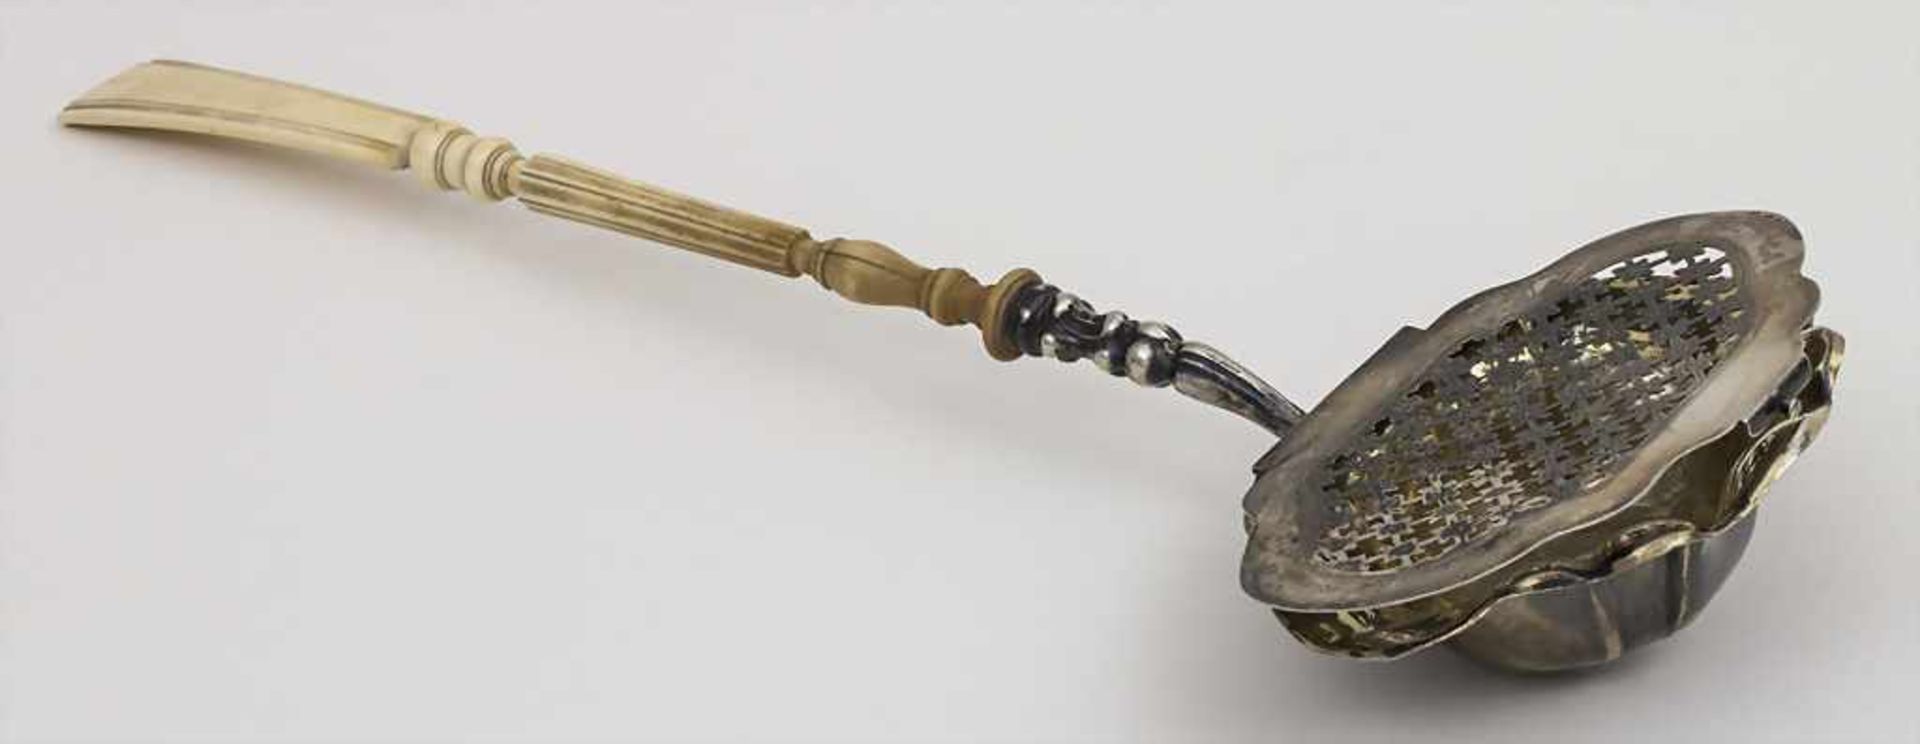 Bowlenkelle mit Beingriff / A punch ladle with bone handle, deutsch, vor 1888 Punzierung: Silber